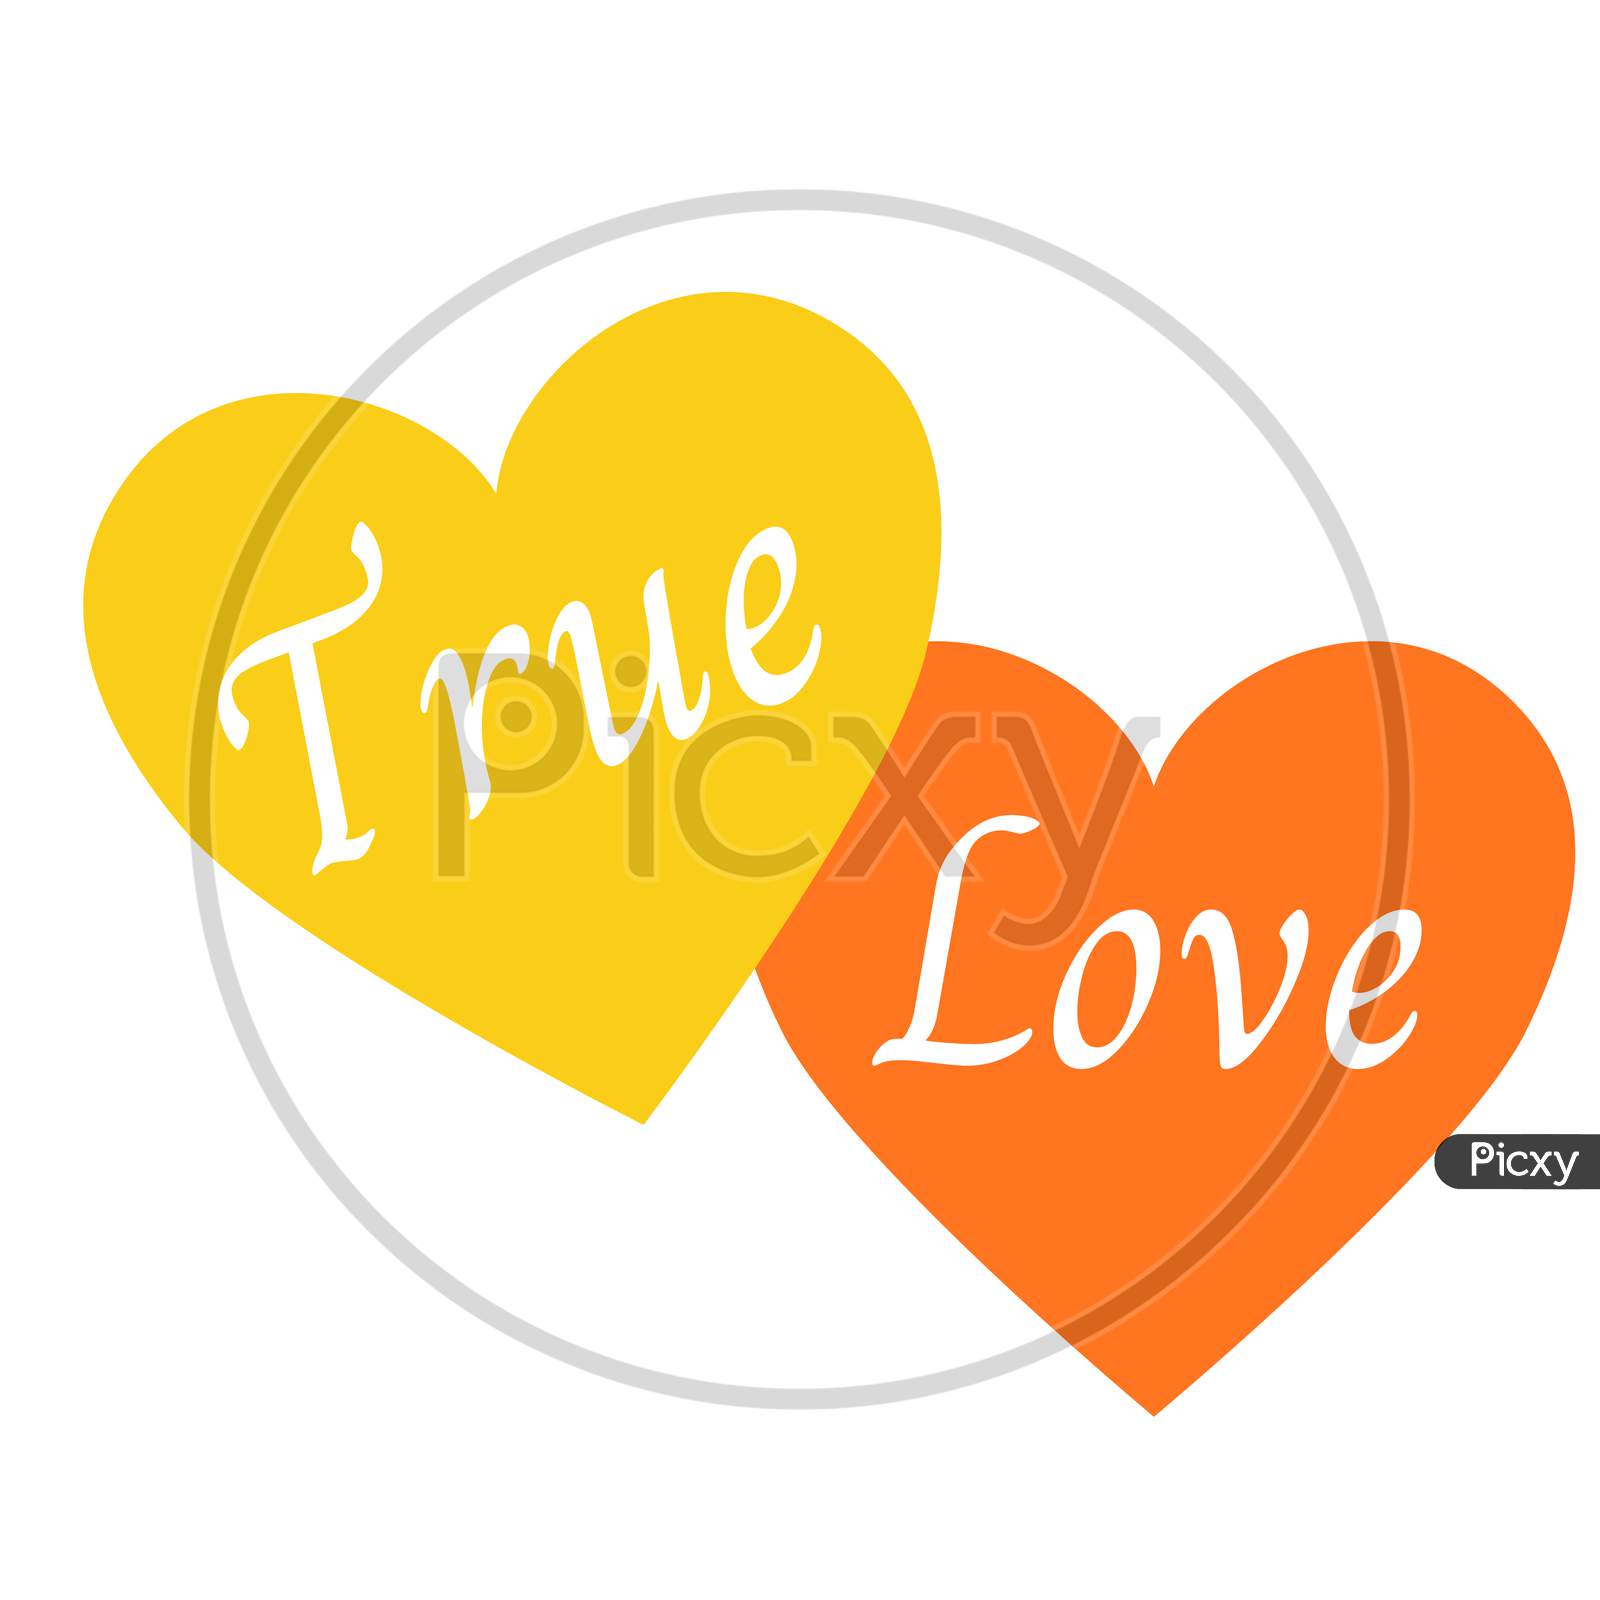 The Shape of True Love, love is true 1 